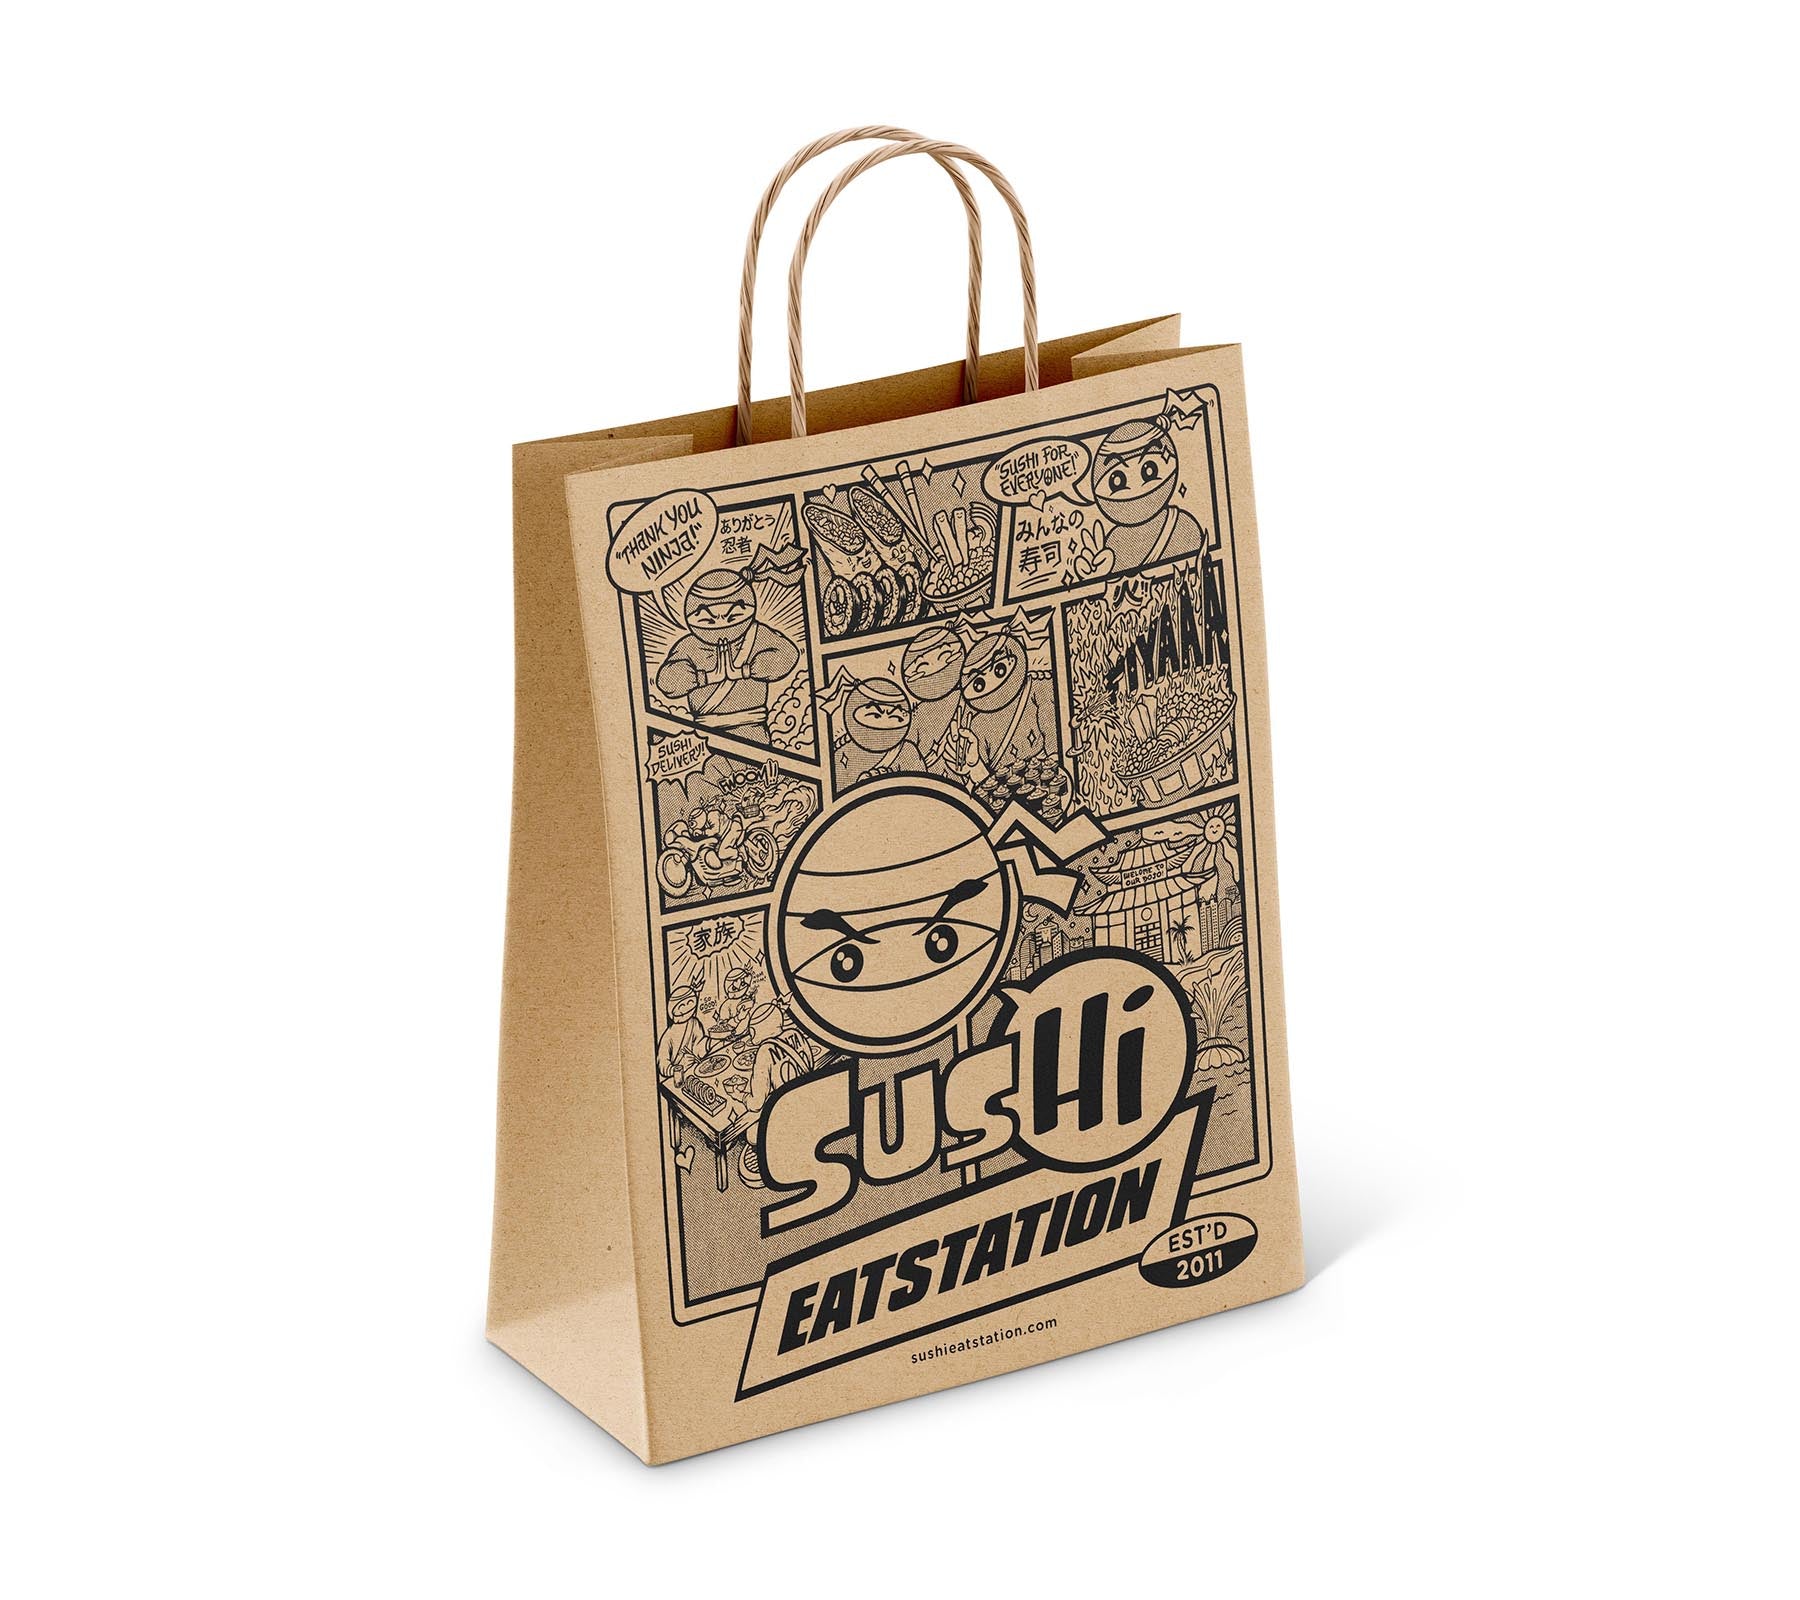 Sus Hi Eatstation - Paper Bag Design – Akyros